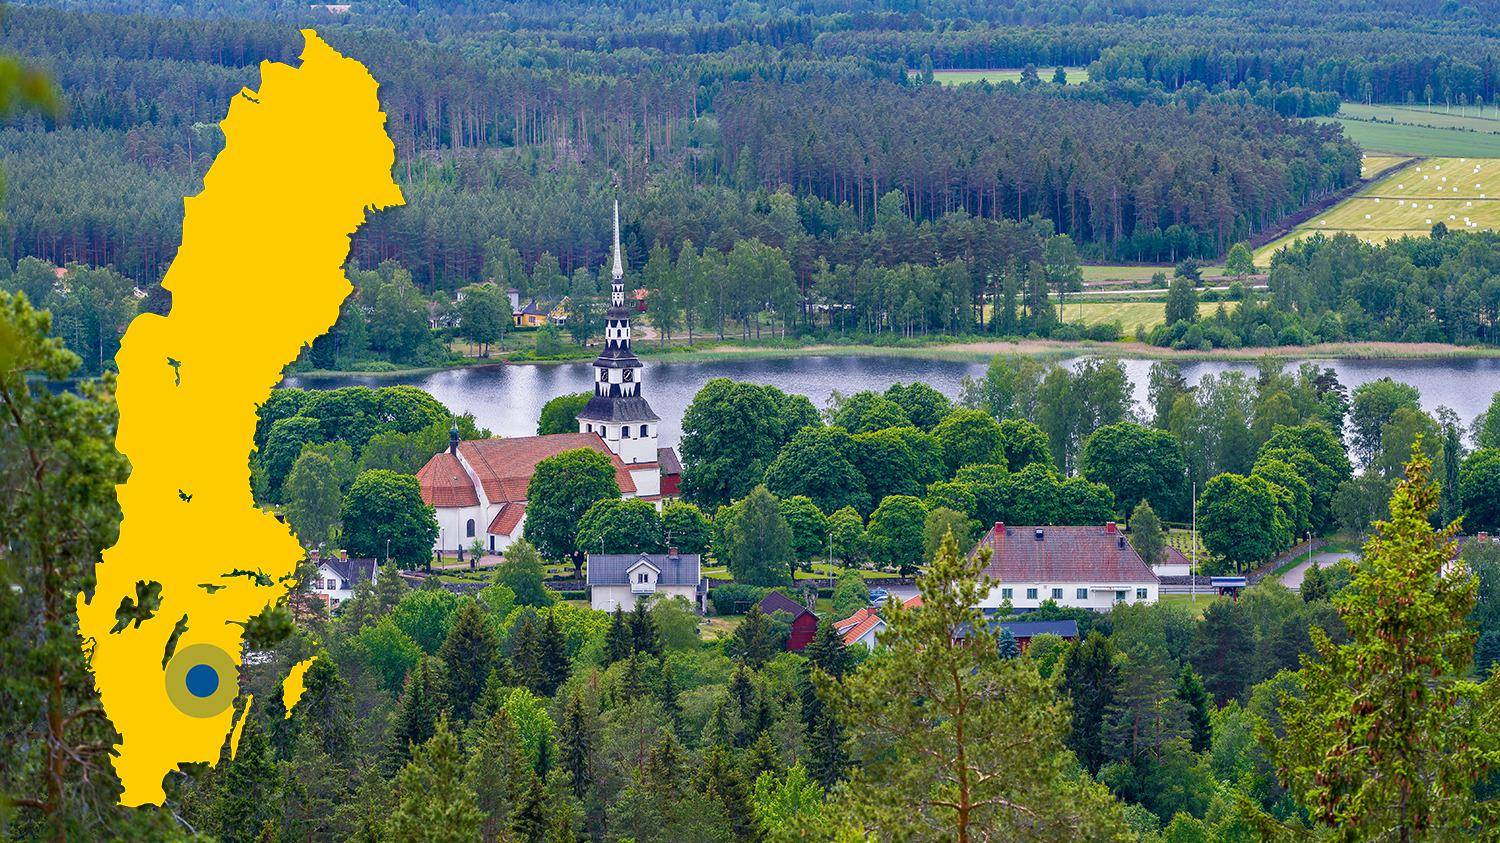 Une église blanche et quelques maisons sont entourées de verdure, de champs et d'un lac. Il y a une carte jaune de la Suède avec un point bleu qui indique l'emplacement d'Ingatorp.